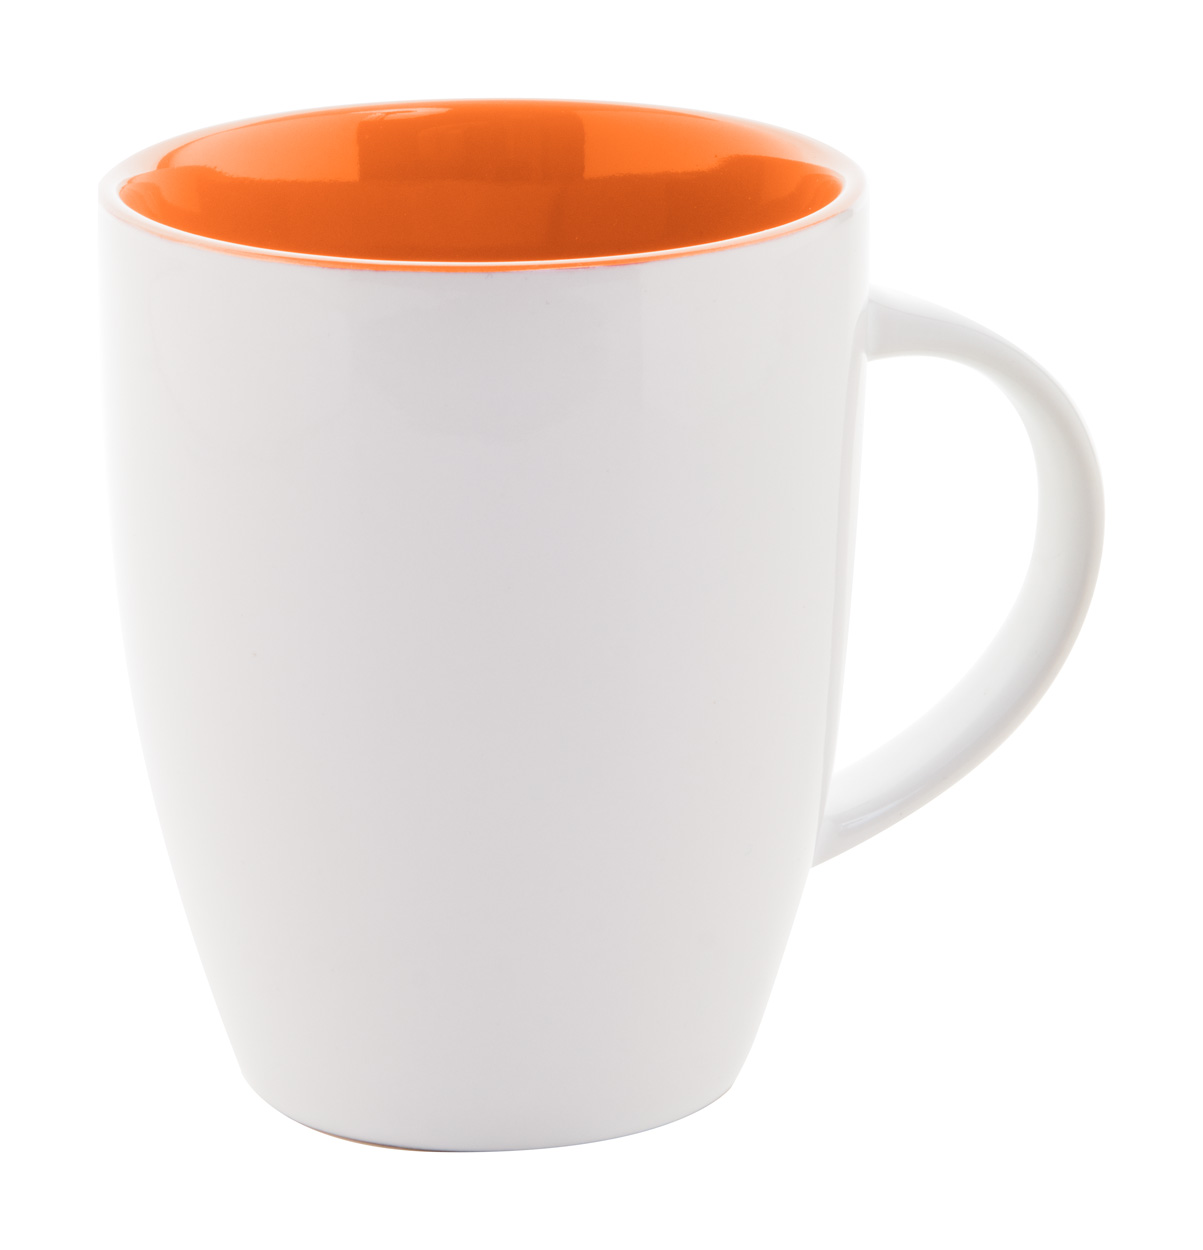 Maia mug - orange